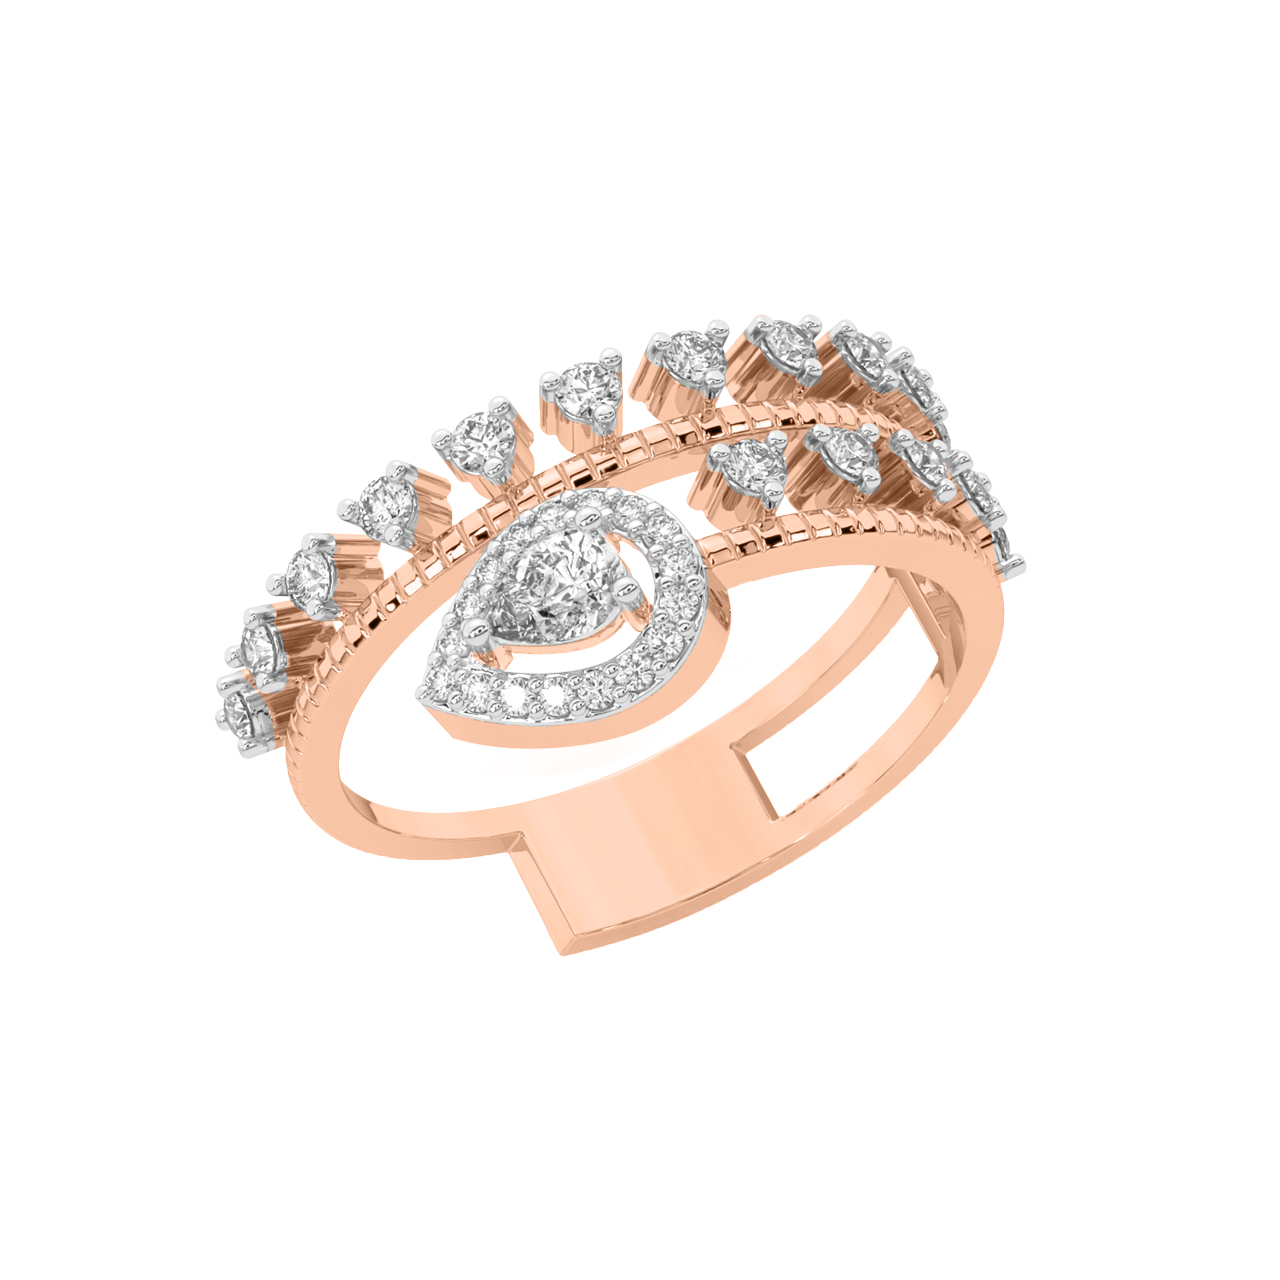 Sheena Round Diamond Engagement Ring